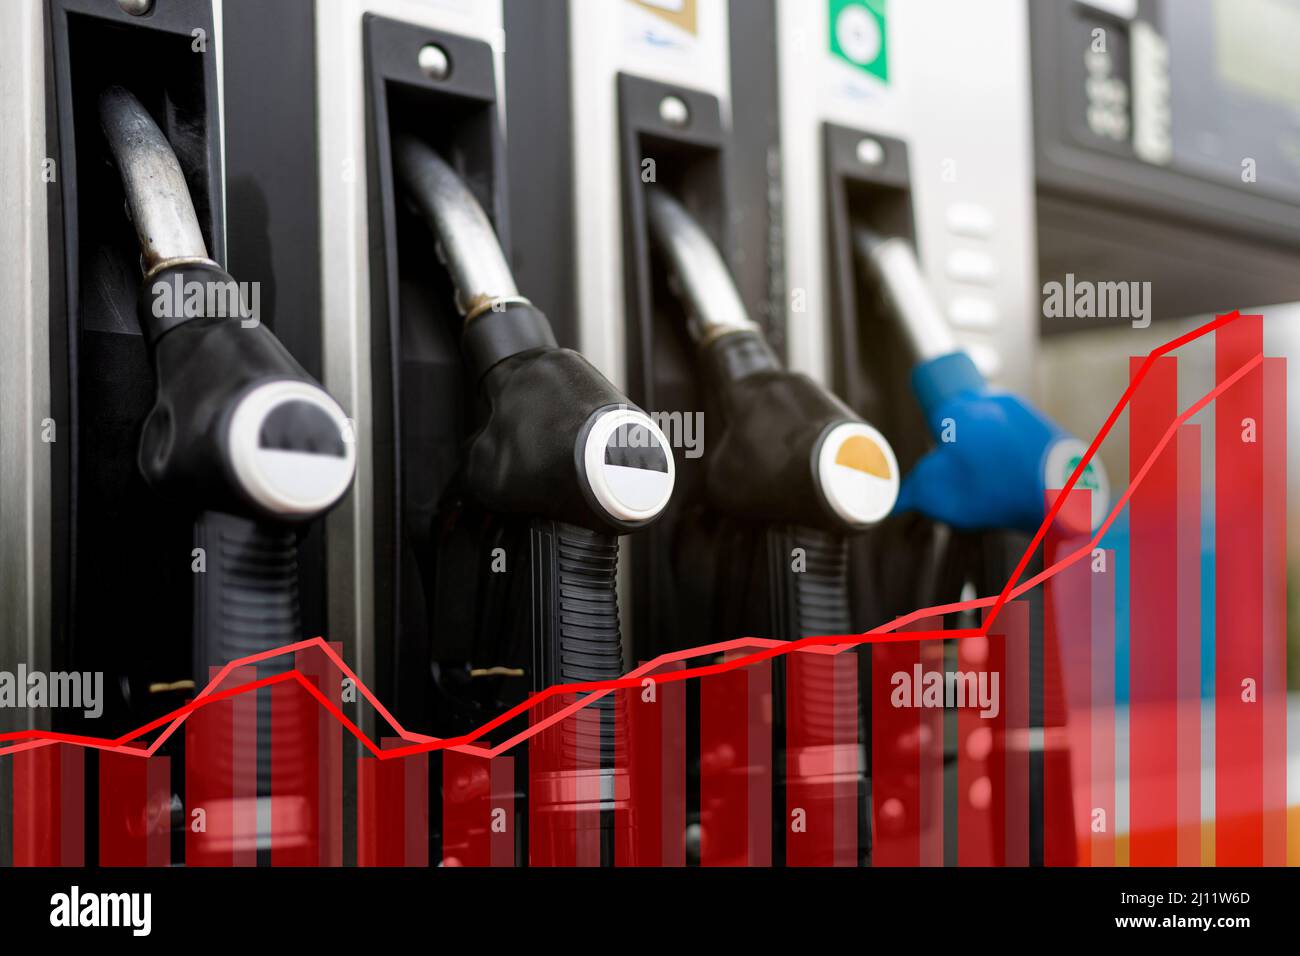 Nahaufnahme eines Gasspenders an einer Tankstelle. Statistische Grafik in roter Farbe in das Bild eingefügt. Konzept der Preiserhöhung im Kraftstoffsektor. Stockfoto